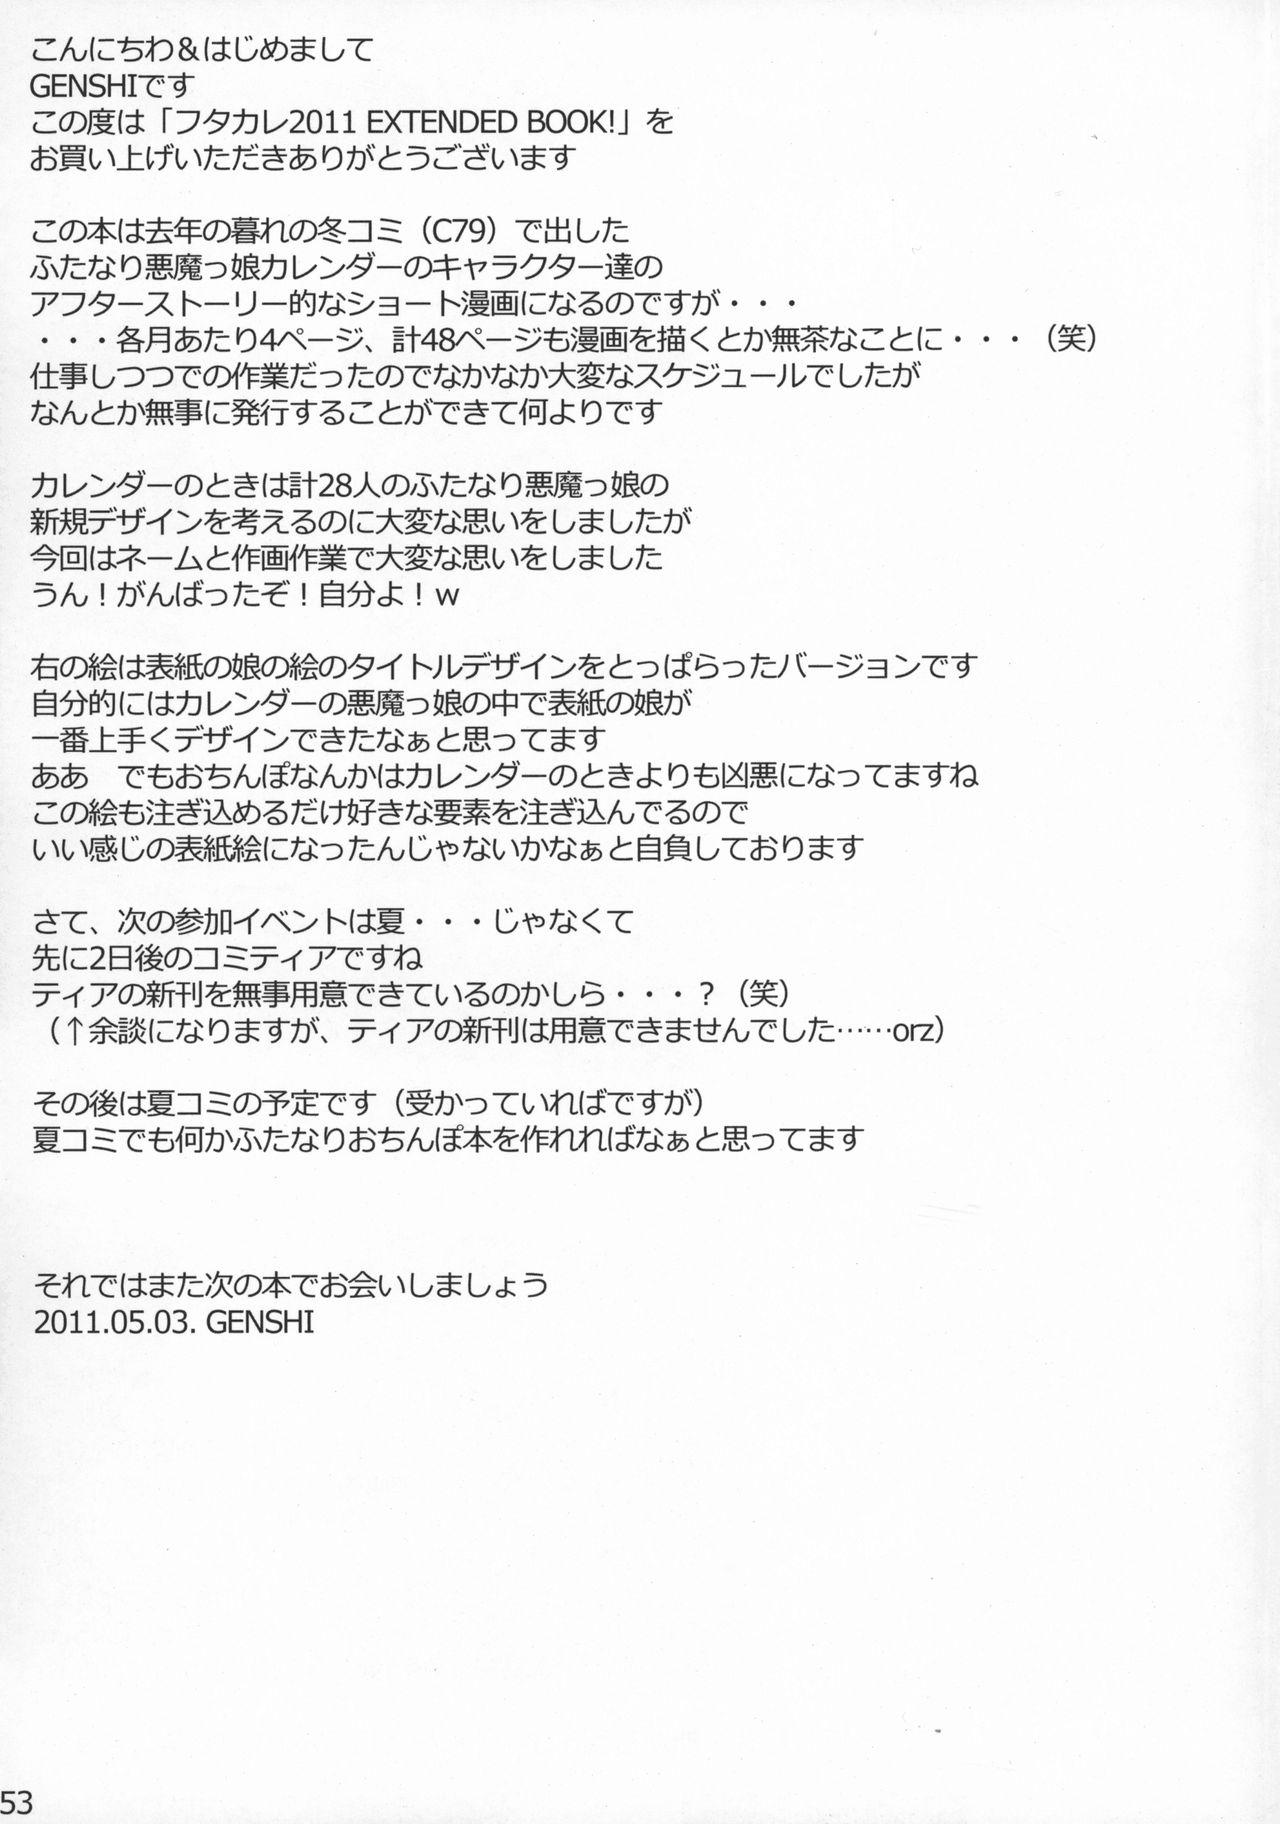 Futakare 2011 EXTENDED BOOK! 52